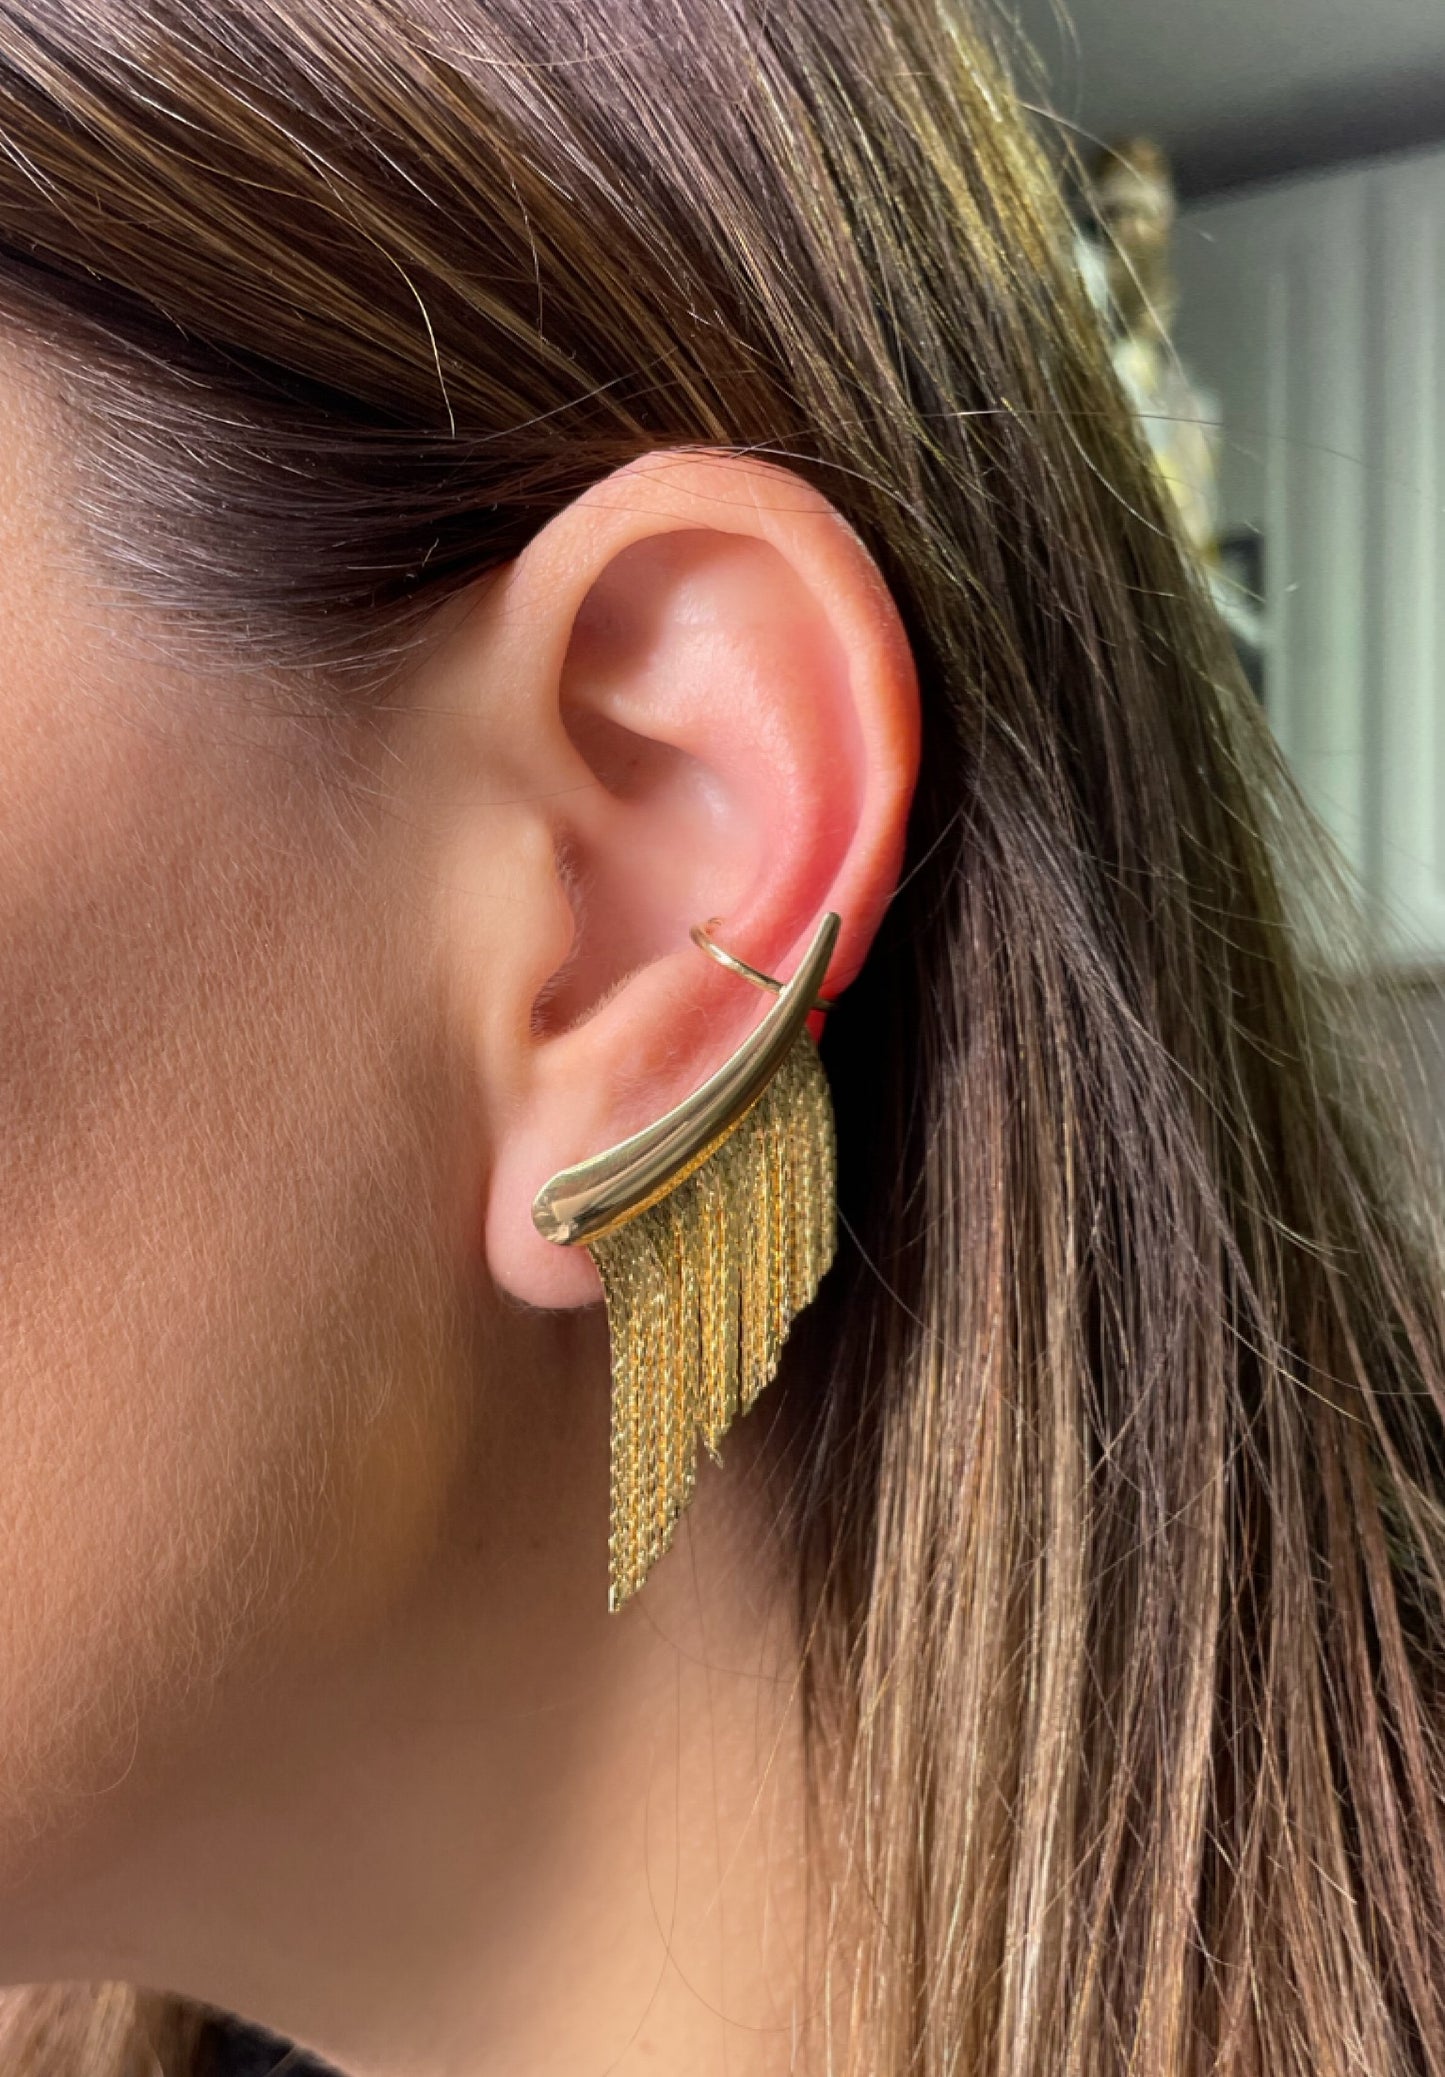 Tasseled horn earrings